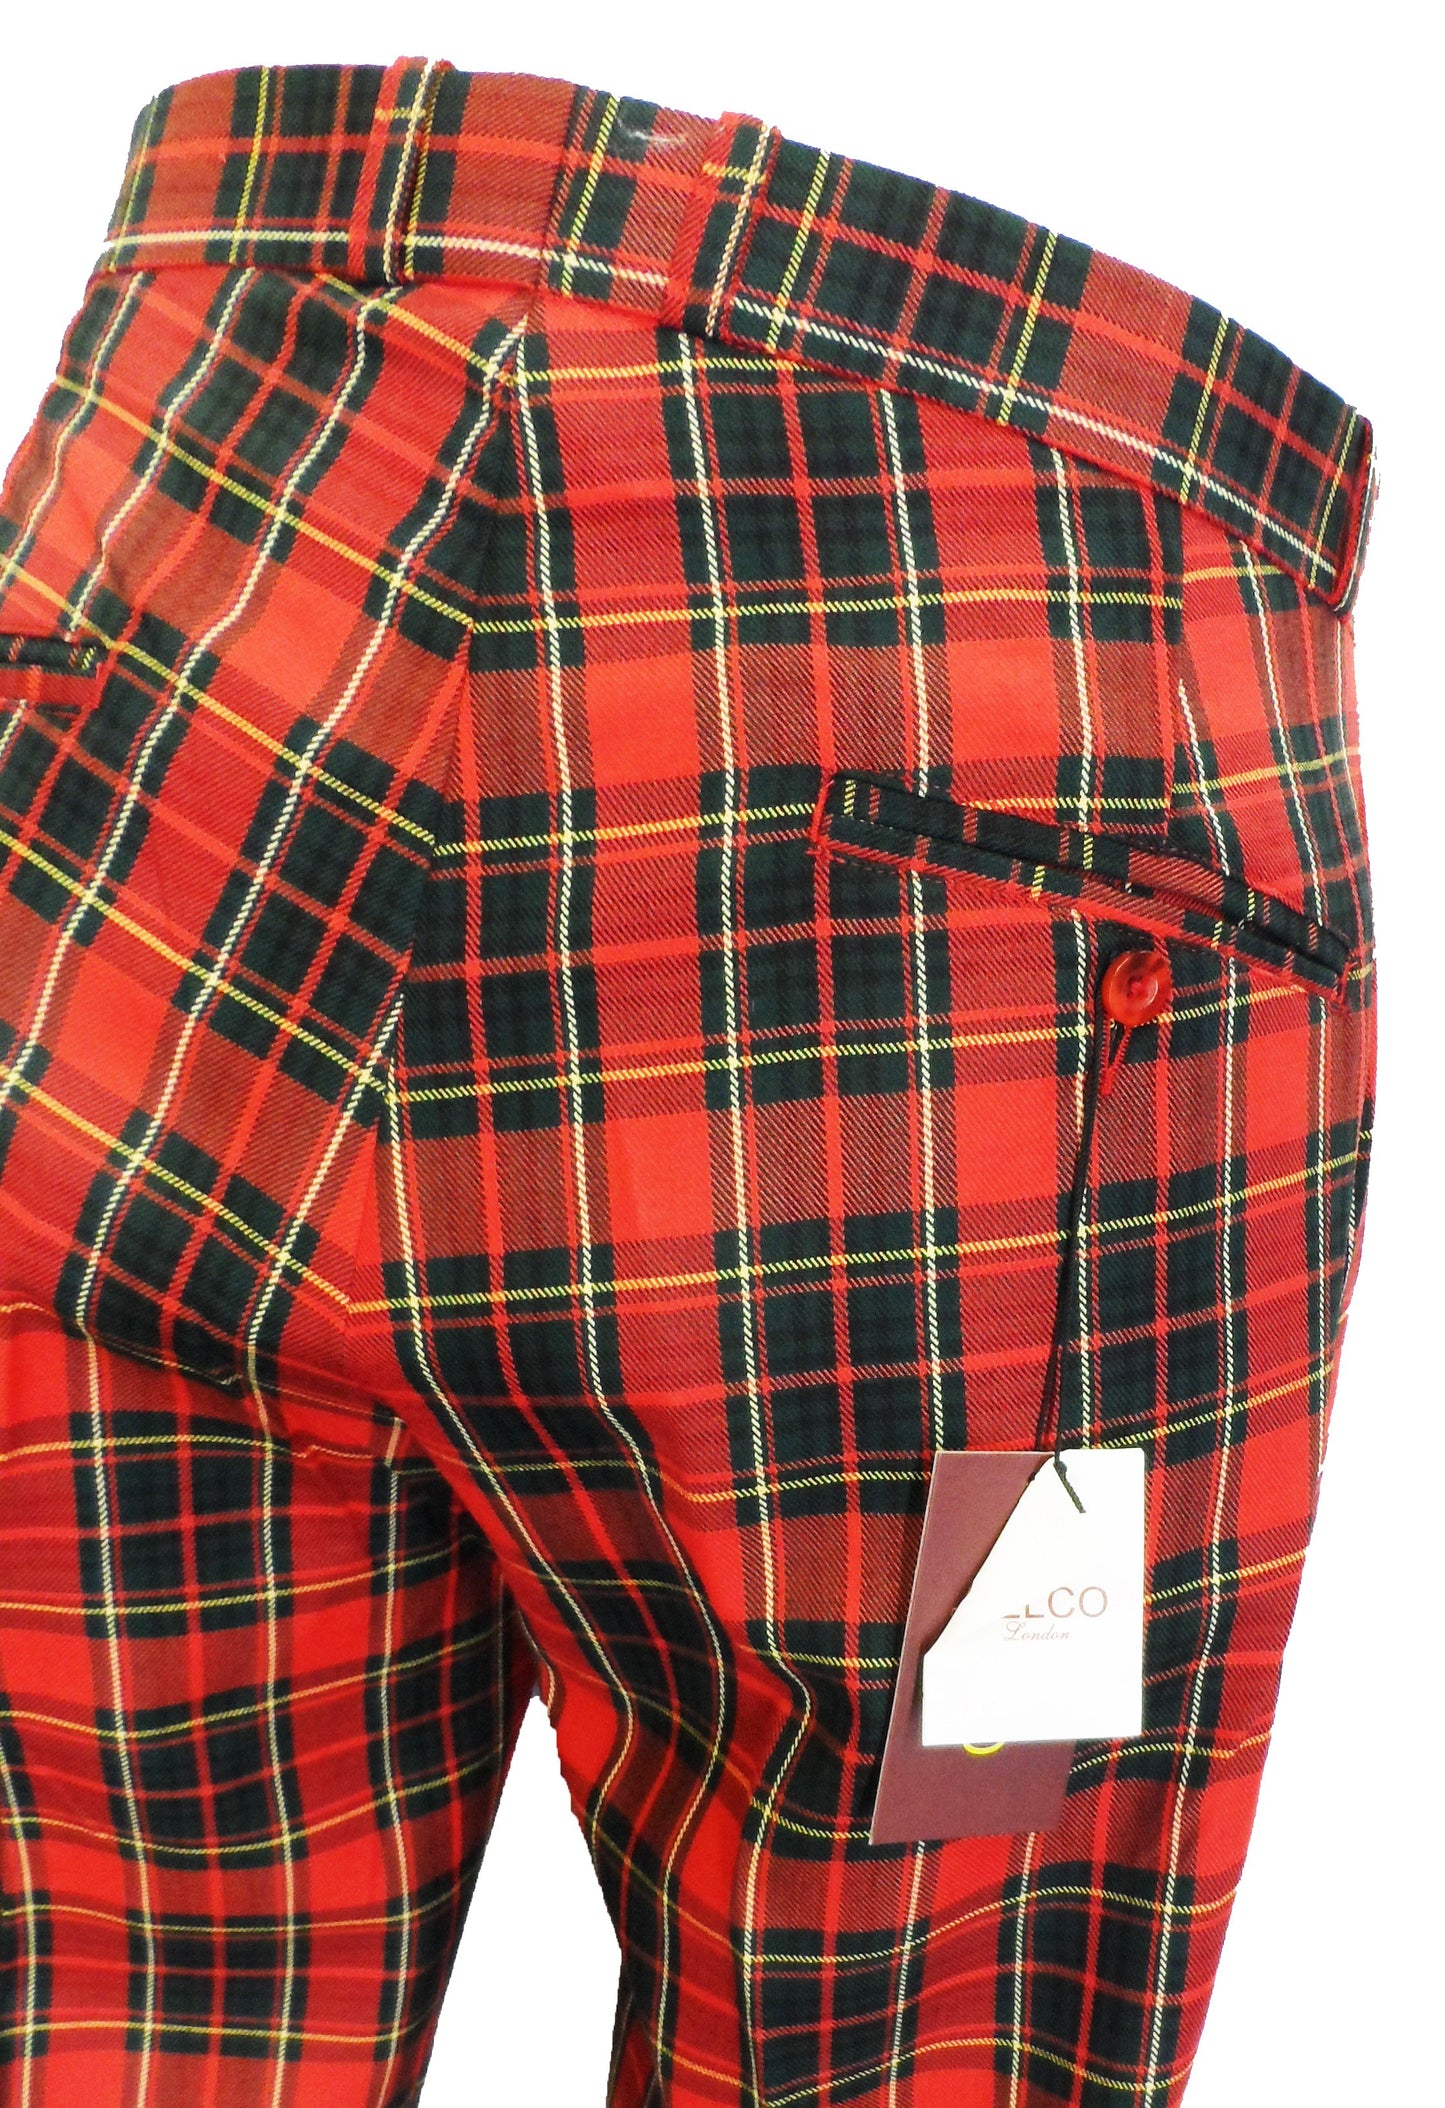 الترتان الأحمر في الستينيات والسبعينيات من القرن الماضي Sta Press Trousers